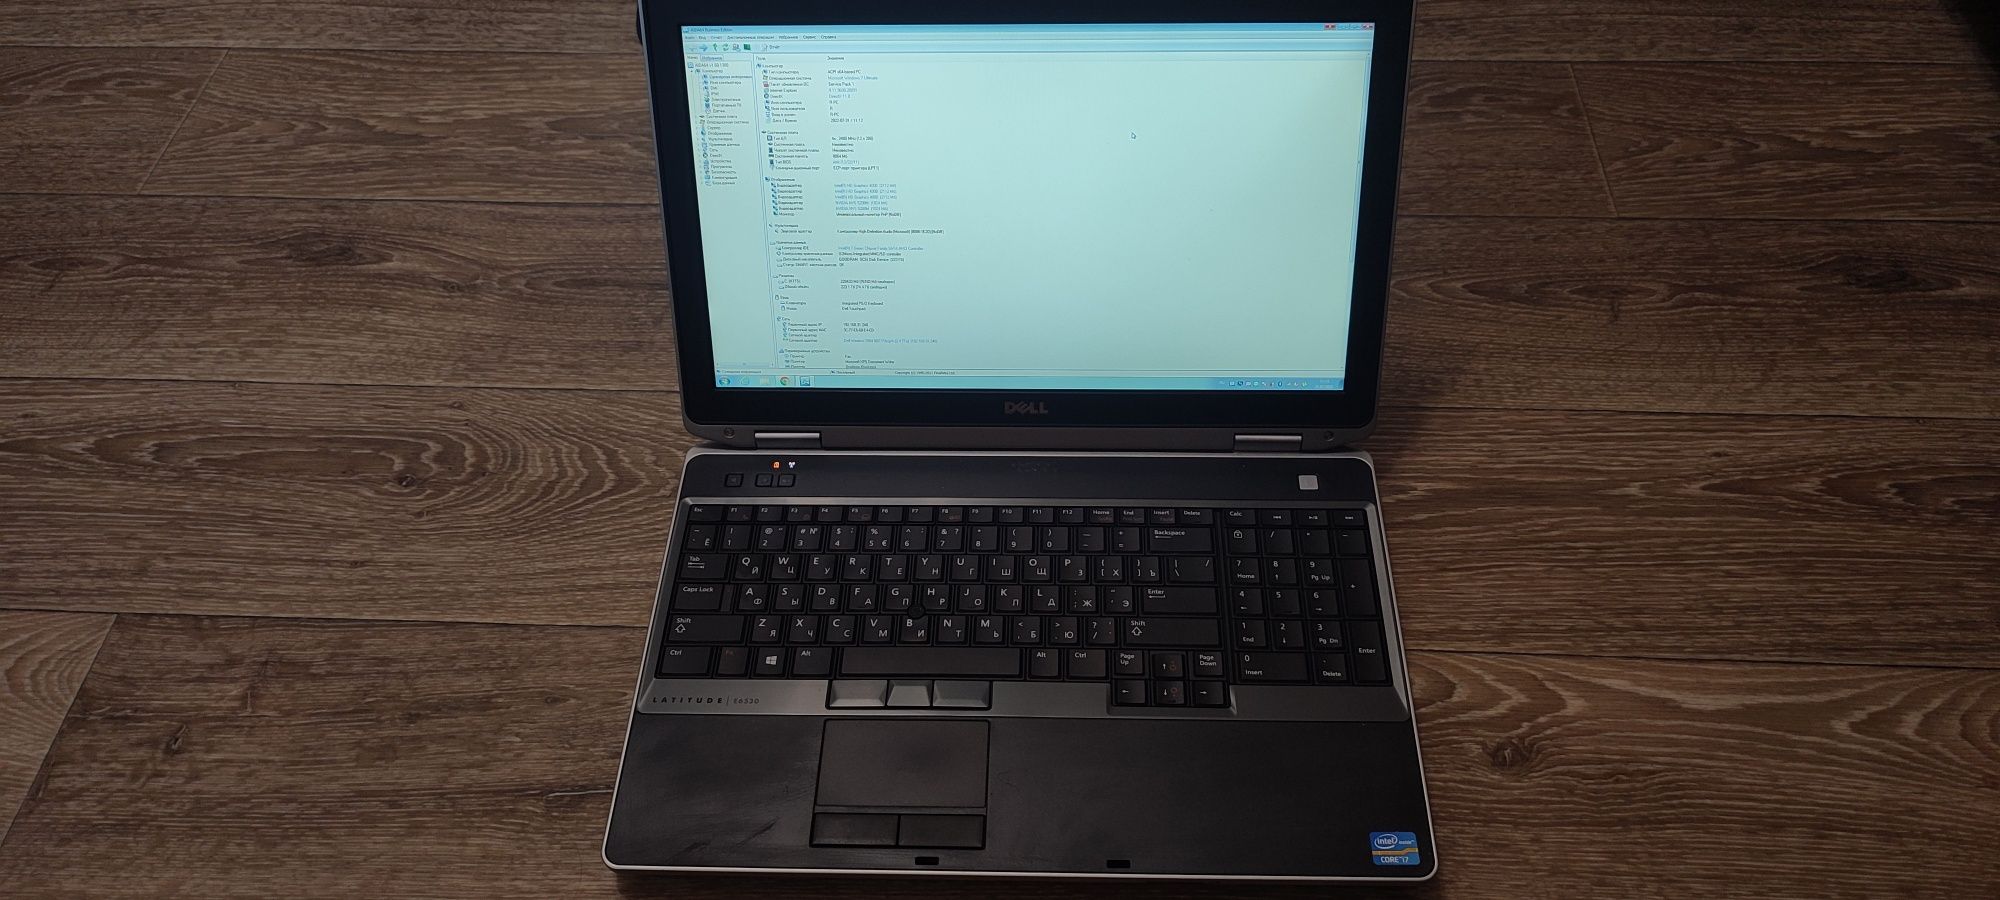 Ноутбук I7 3630Qm, 8Gb, SSD 240